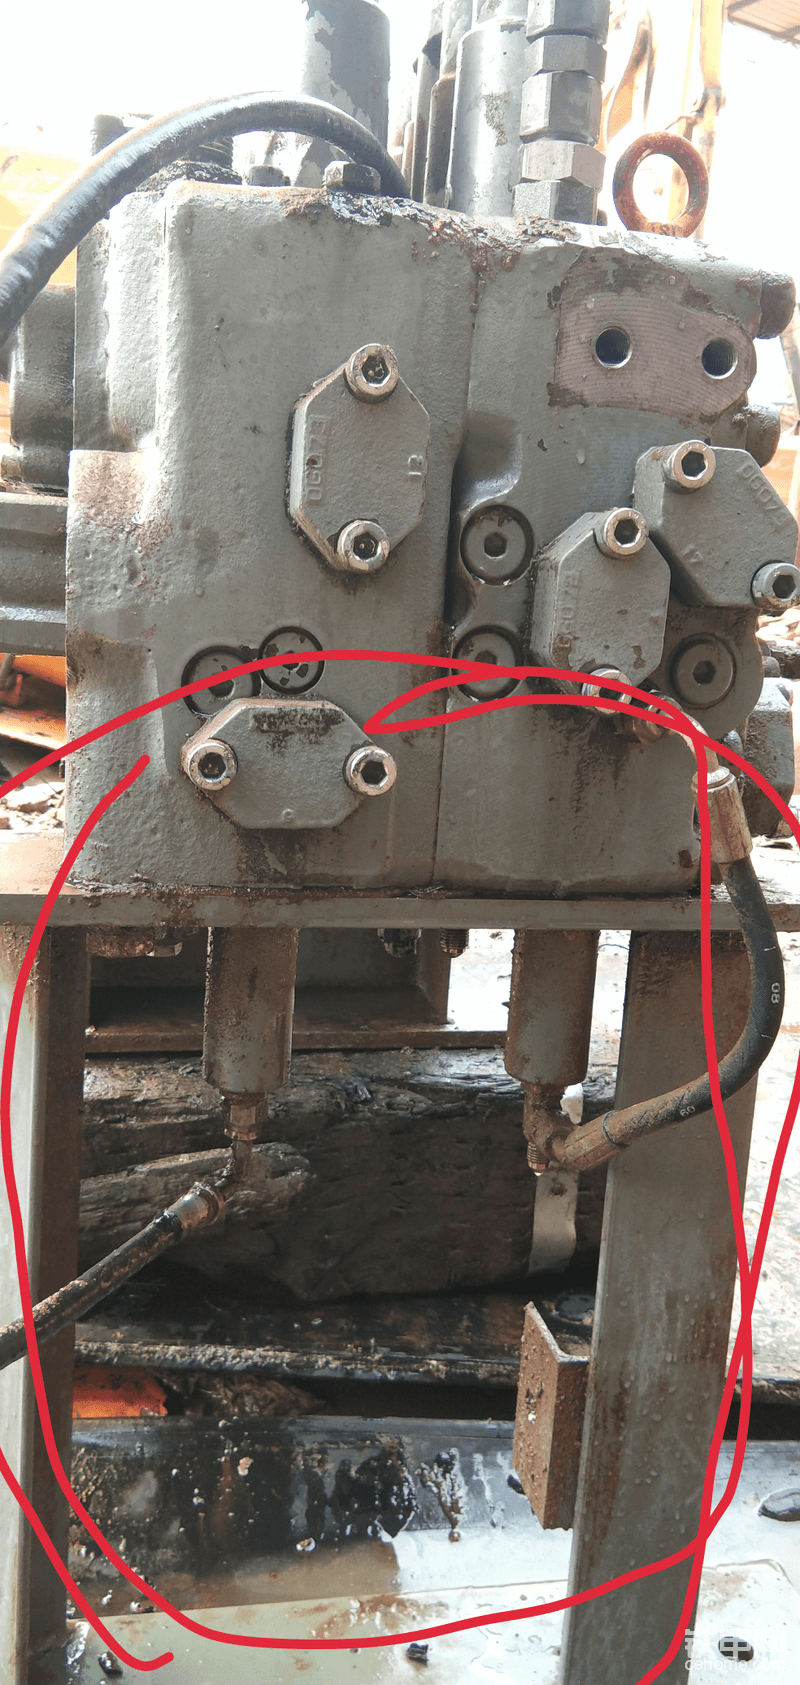 另外支架也特别的容易脱焊 一定要看仔细哦 有脱焊的要补焊 不然震动很容易扯坏信号管